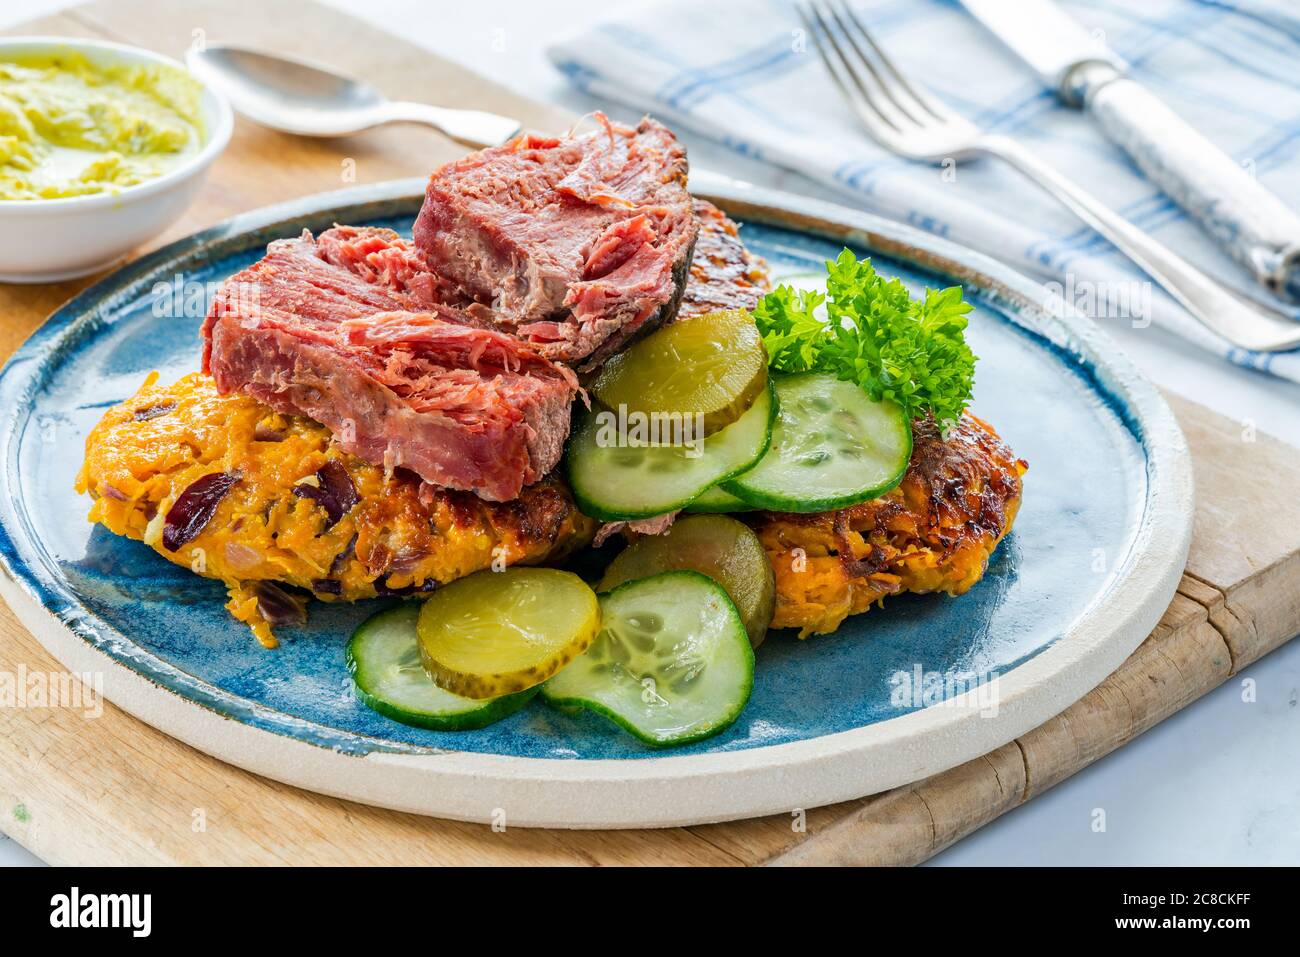 Sweet potato latkes with sald beef, cucumber salad and mustard tartar sauce Stock Photo